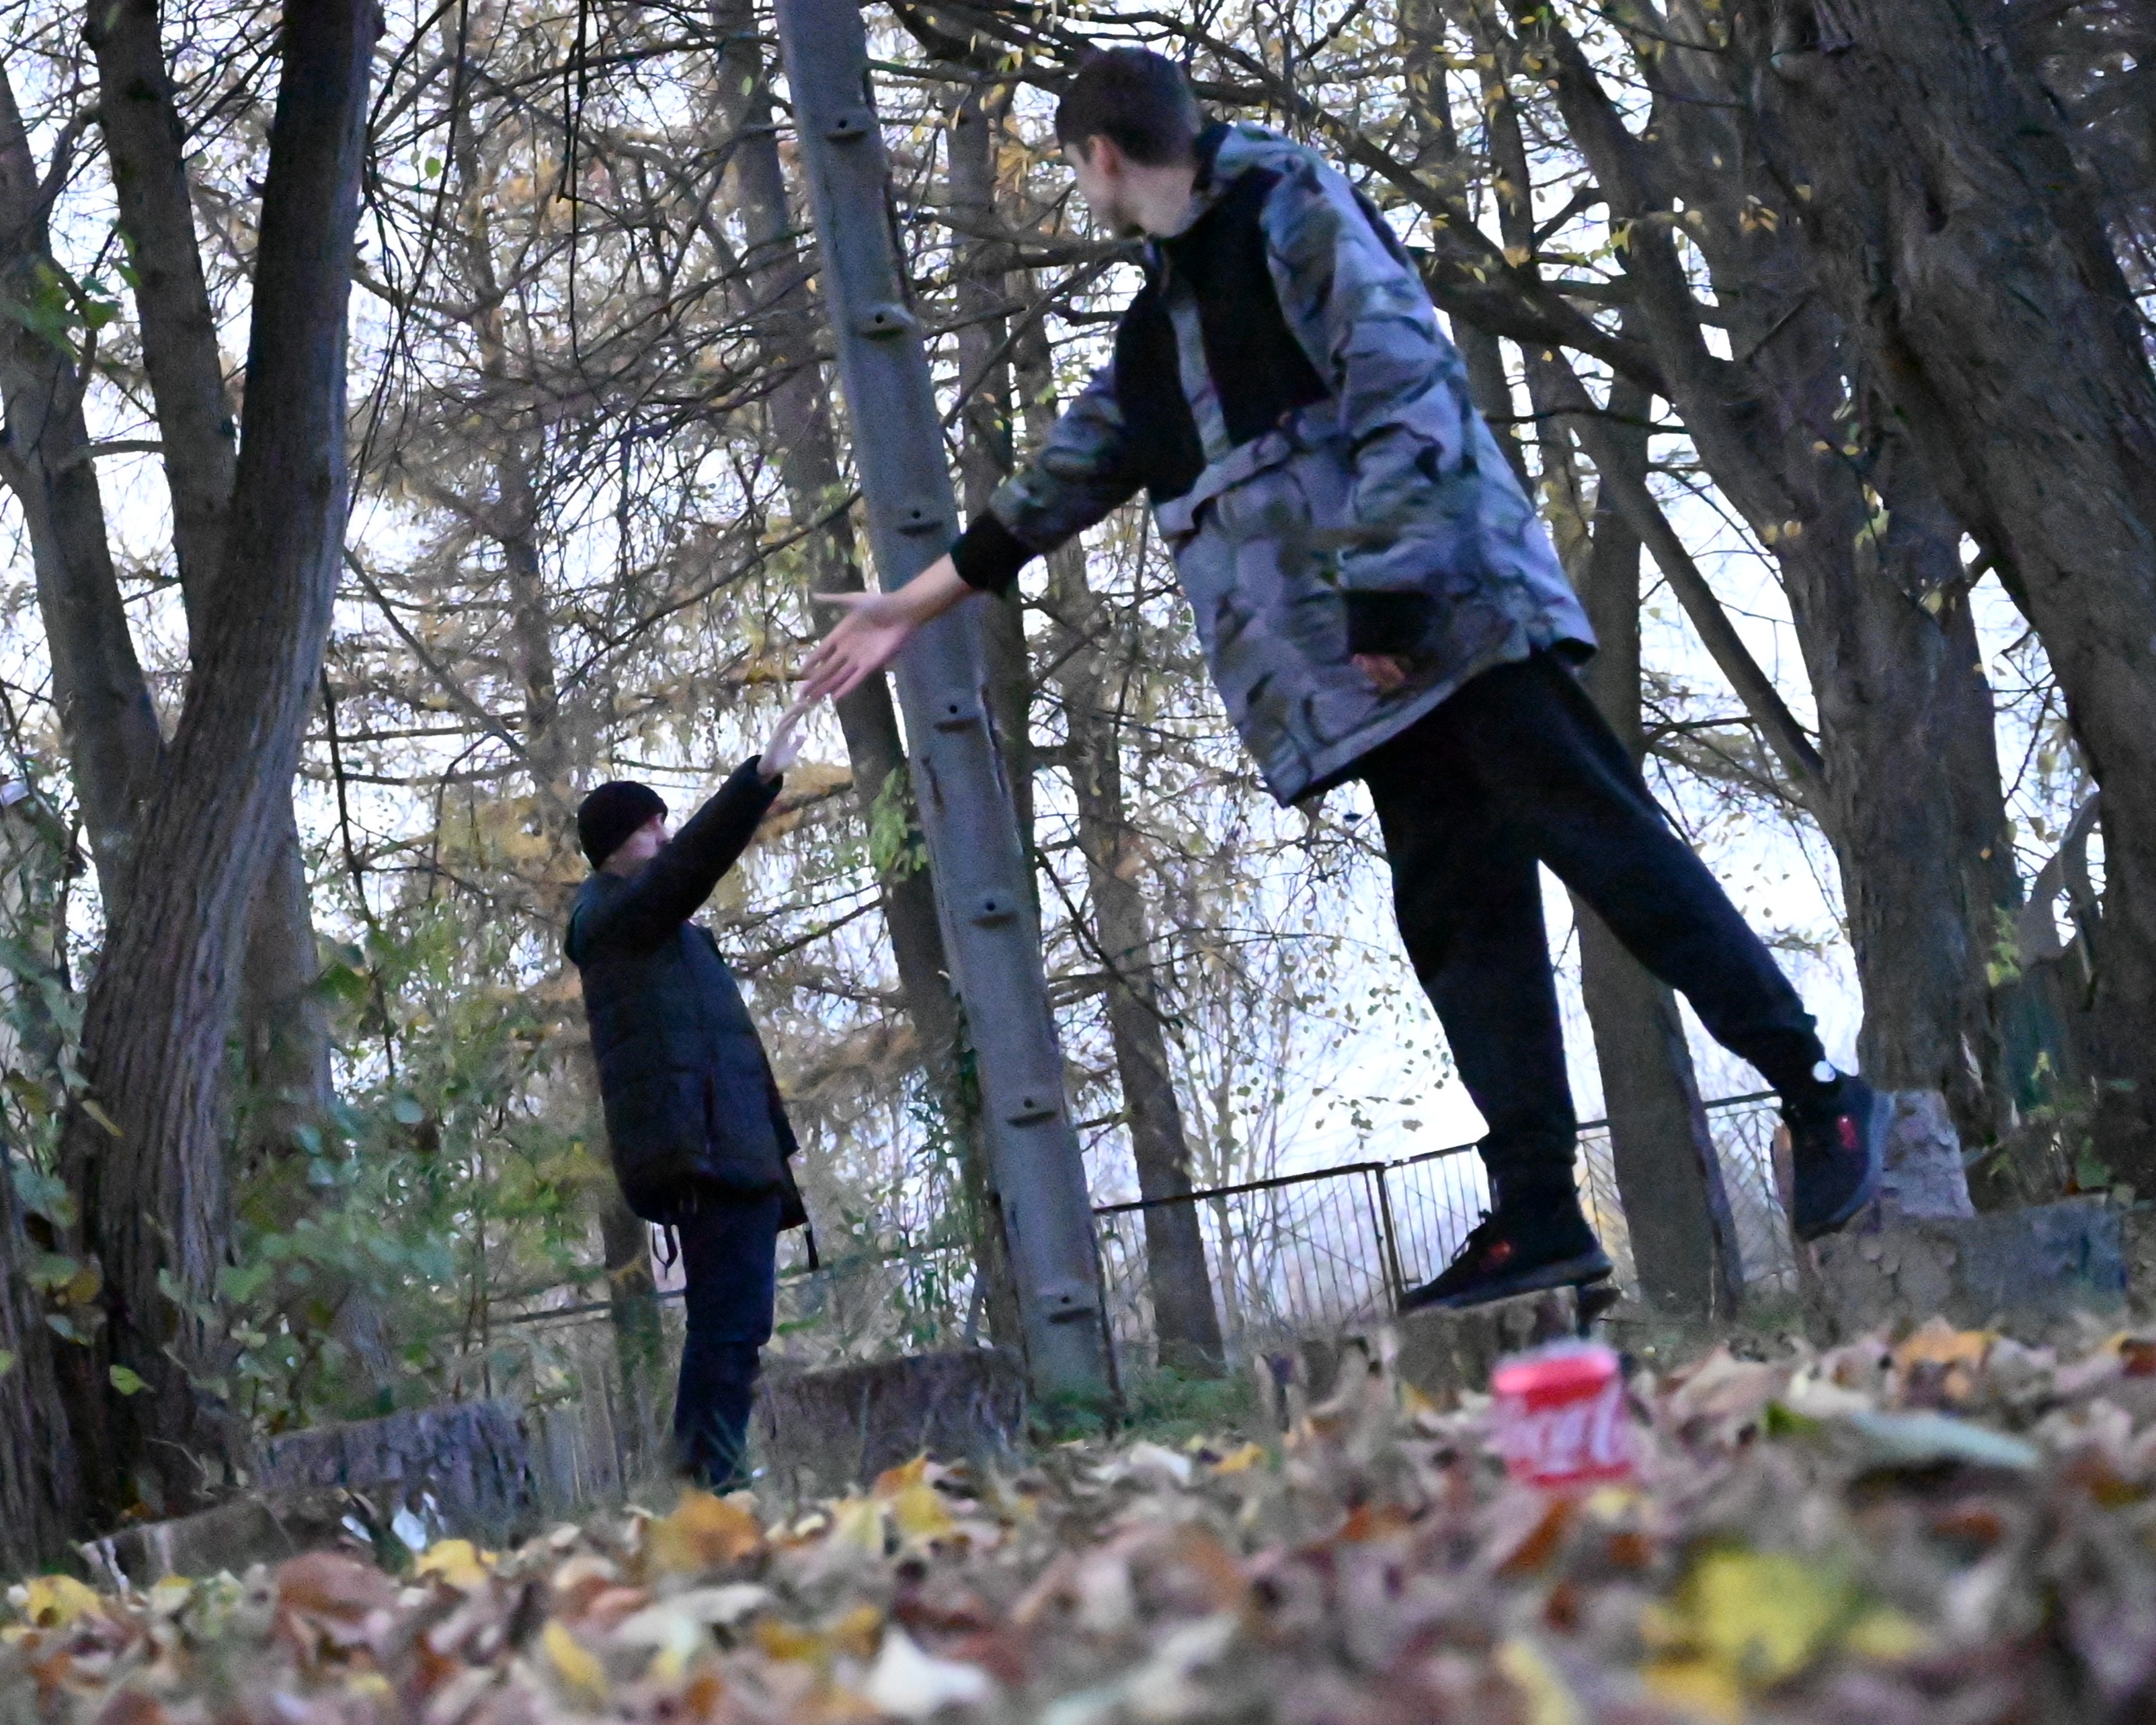 Cykl zajęć z programu „Fajna ferajna”  | Zdjęcie z użyciem perspektywy - jeden chłopiec stoi bokiem i wydaje się być bardzo duży, drugi, też bokiem - bardzo mały. Chłopcy wyciągają do siebie ręce. W tle pnie dużych drzew.JPG